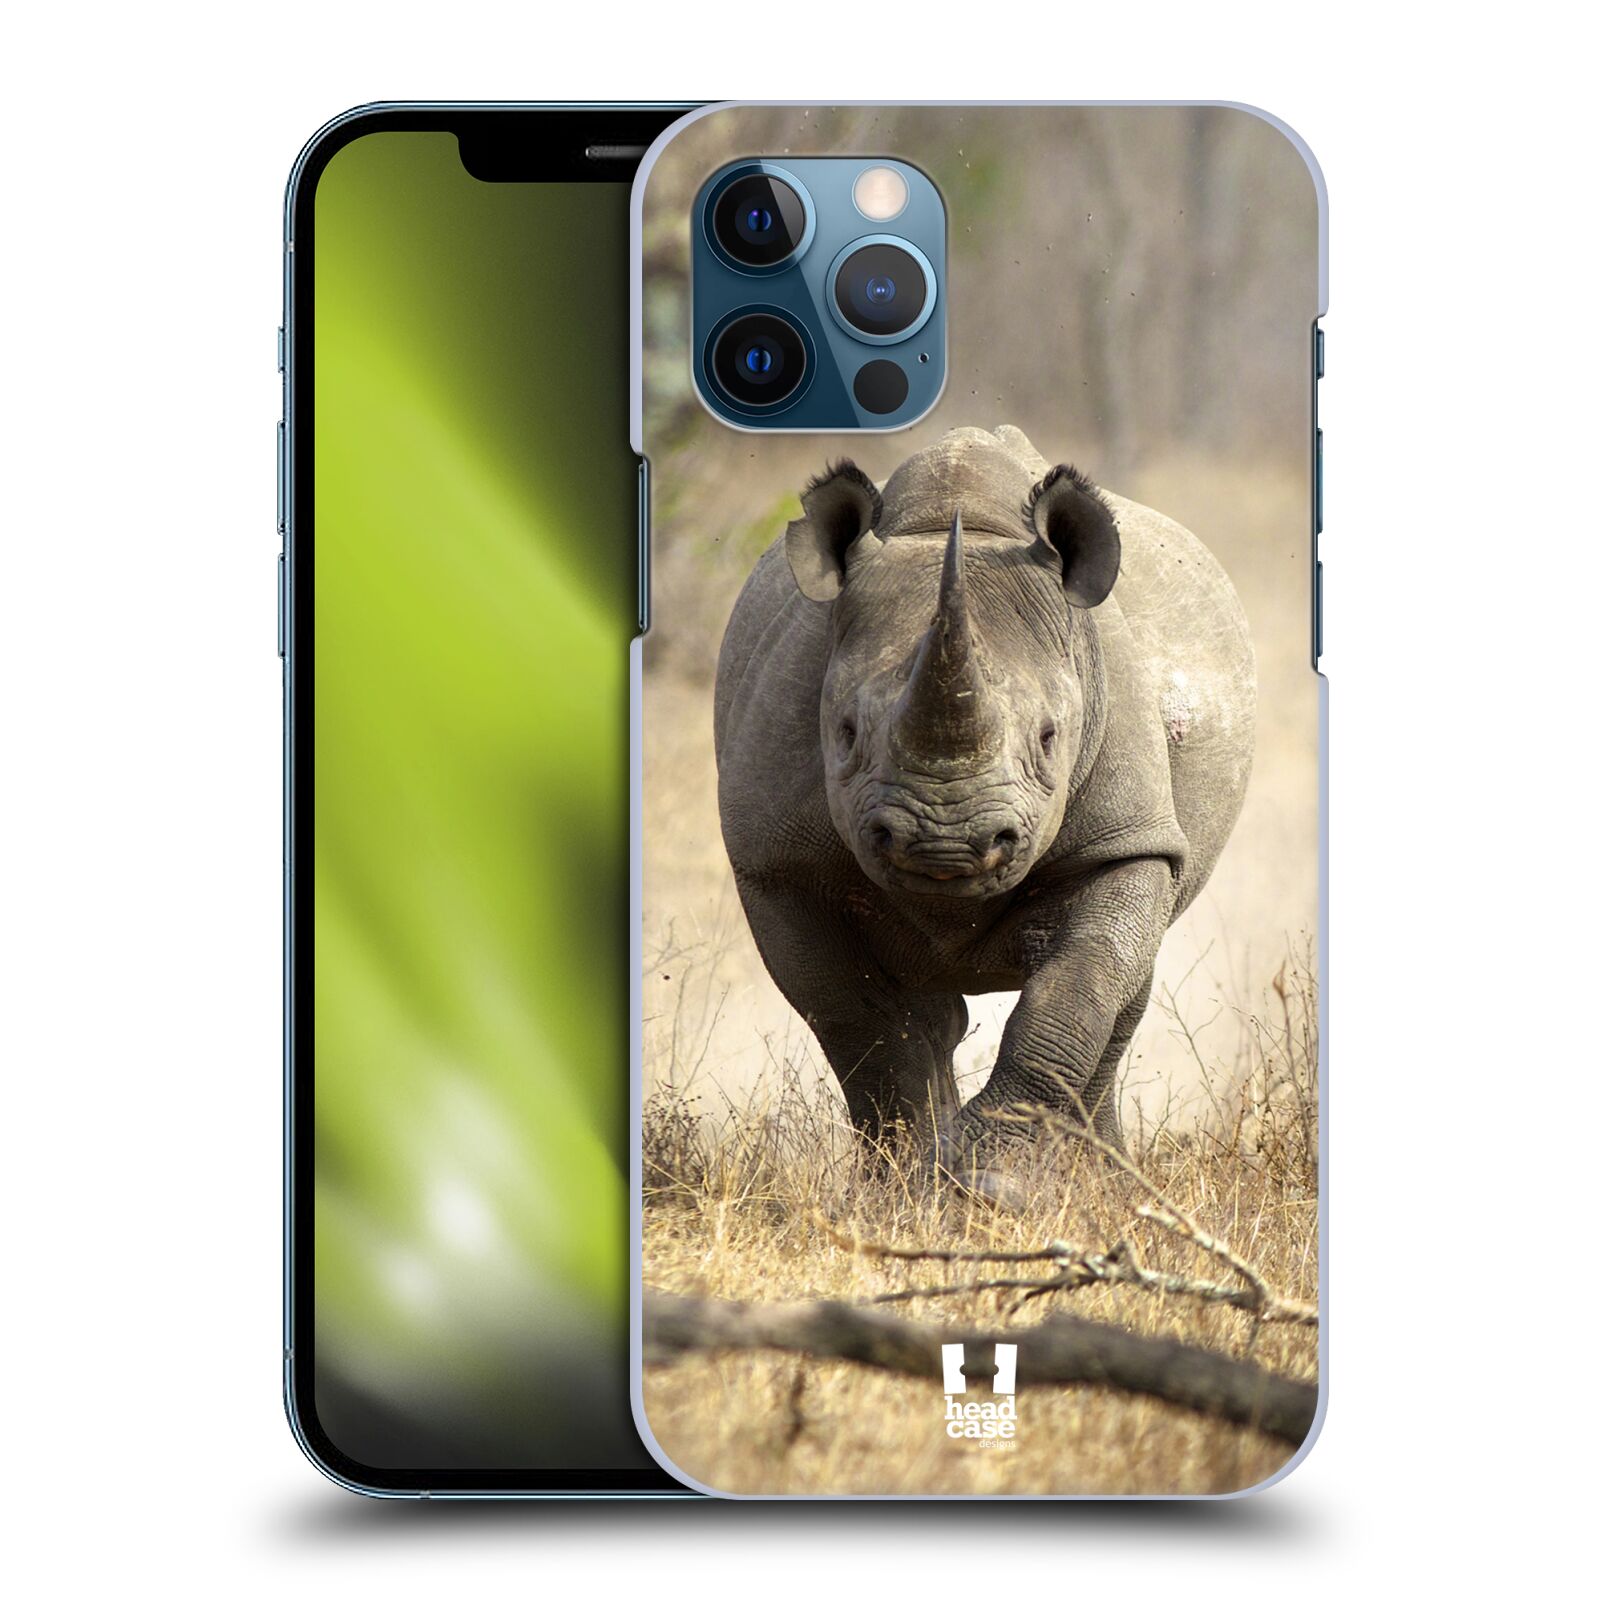 HEAD CASE plastový obal na mobil Apple Iphone 12 / Iphone 12 PRO vzor Divočina, Divoký život a zvířata foto AFRIKA BĚŽÍCÍ NOSOROŽEC